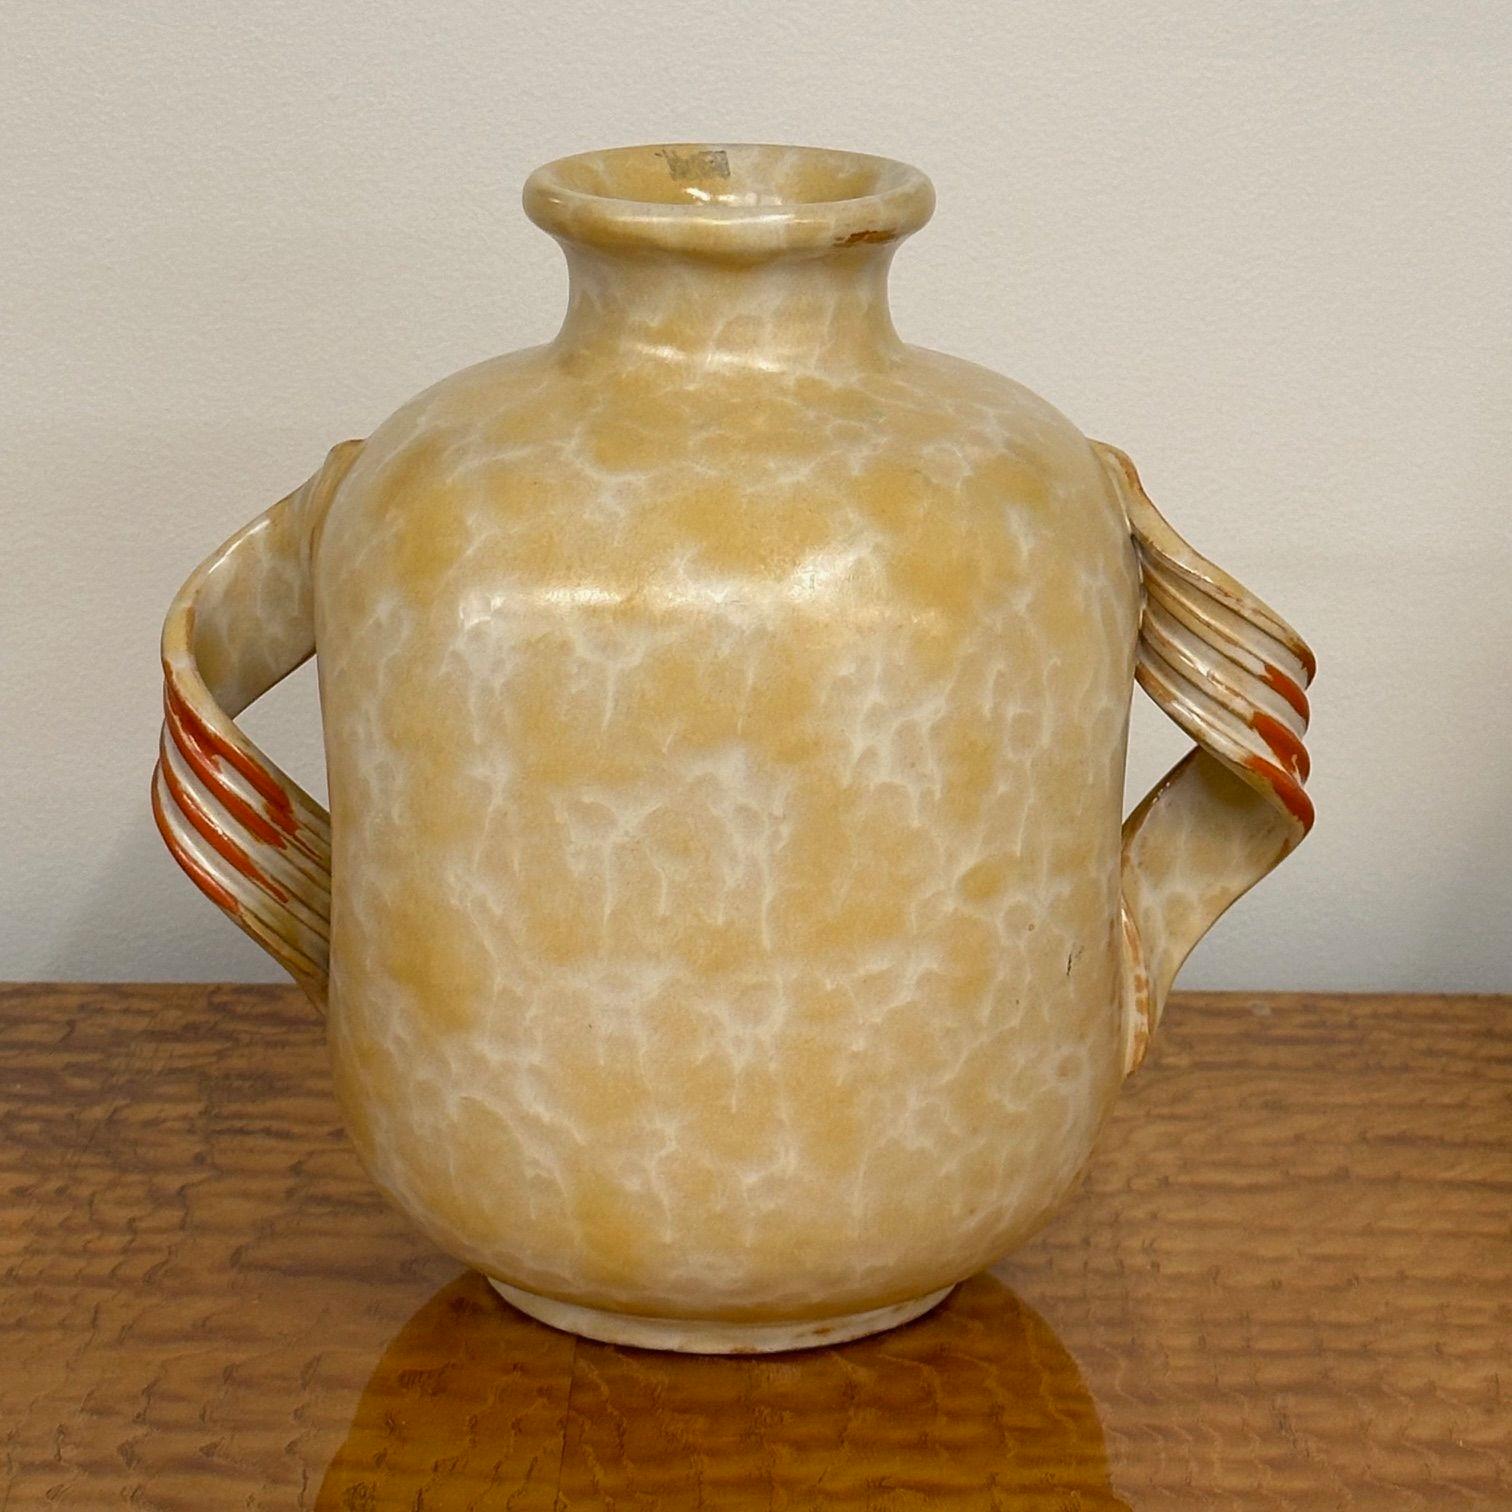 Upsala Ekeby, schwedische Moderne der Jahrhundertmitte, beigefarbene Keramikvase, Gefäß oder Urne, Schweden, 1930er Jahre

Eine beige und orange glasierte Keramikvase, entworfen und hergestellt von Upsala Ekeby in Schweden um 1930. Das Werk weist